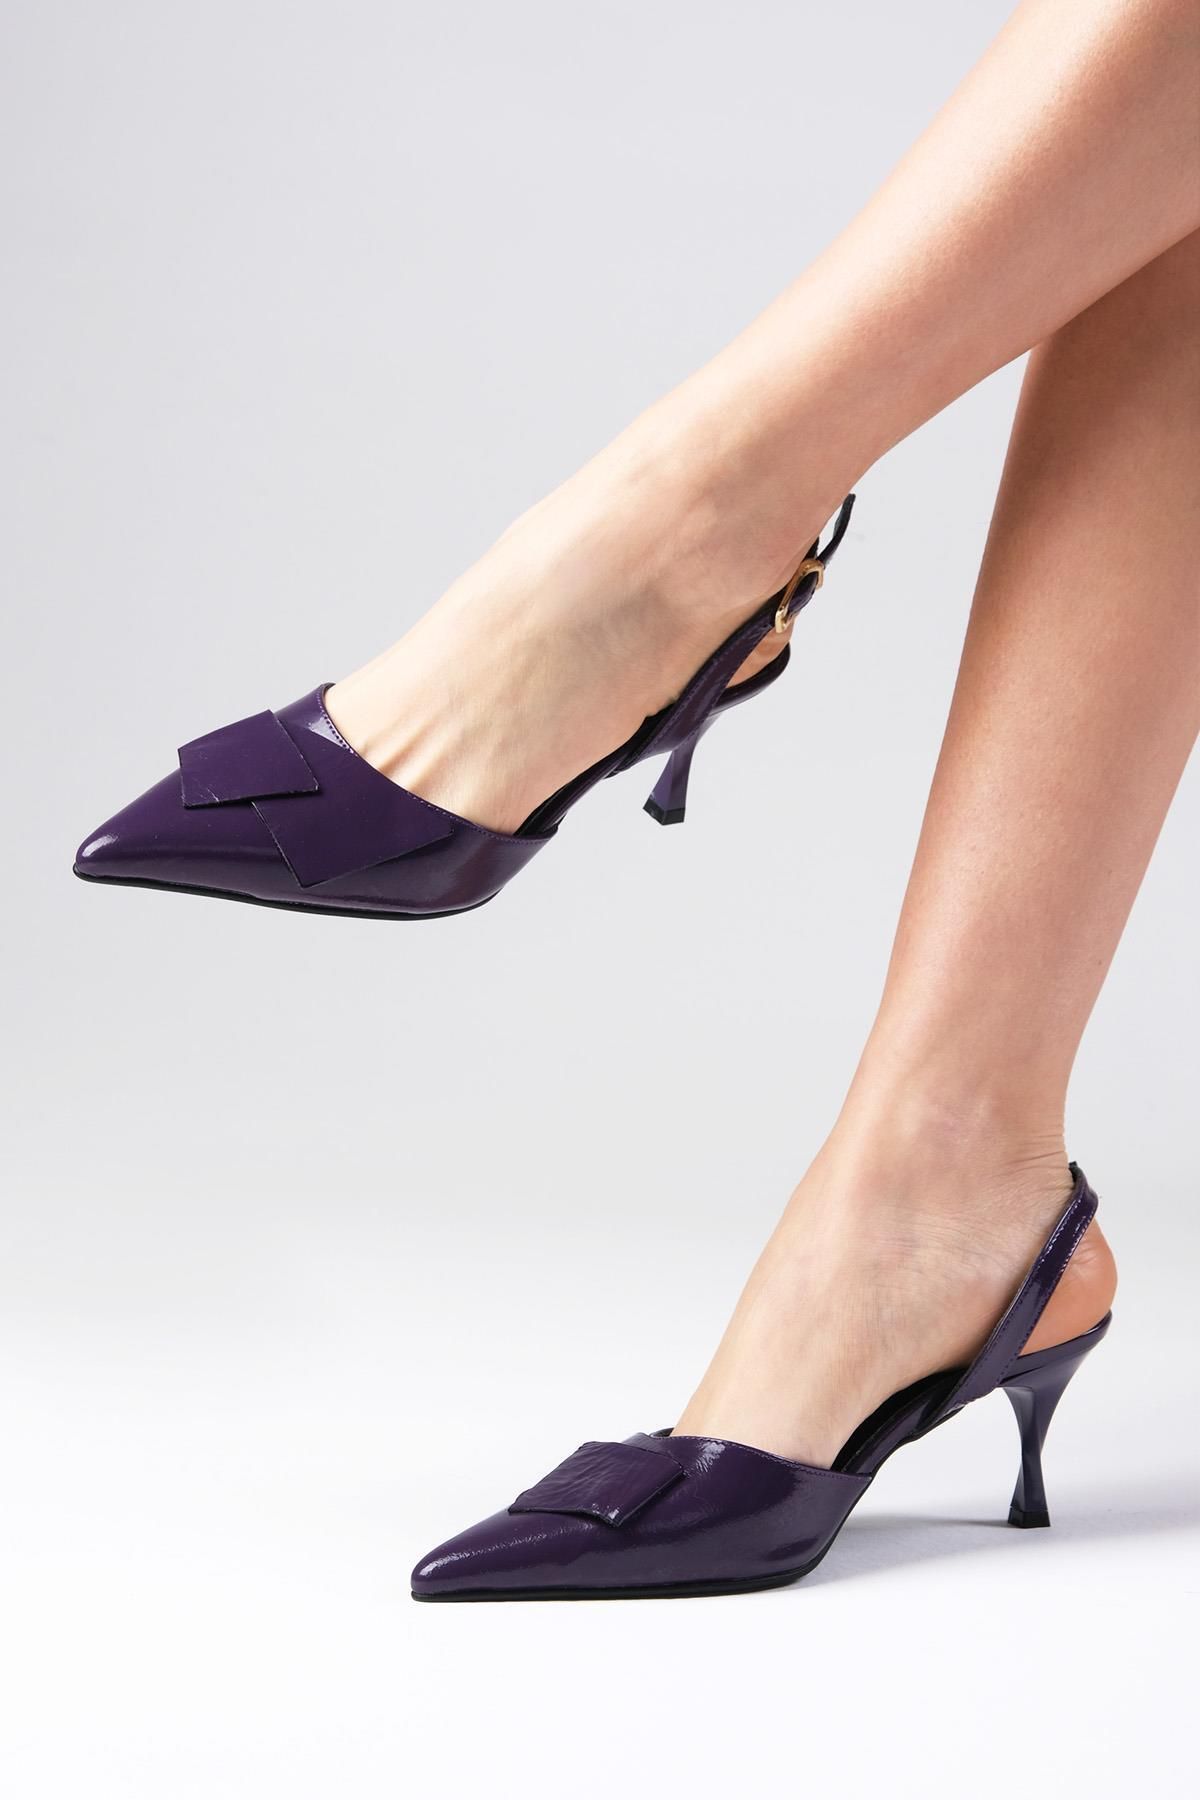 Mio Gusto Josephine Hakiki Rugan Mor Renk Arkası Açık Kadın Topuklu Ayakkabı